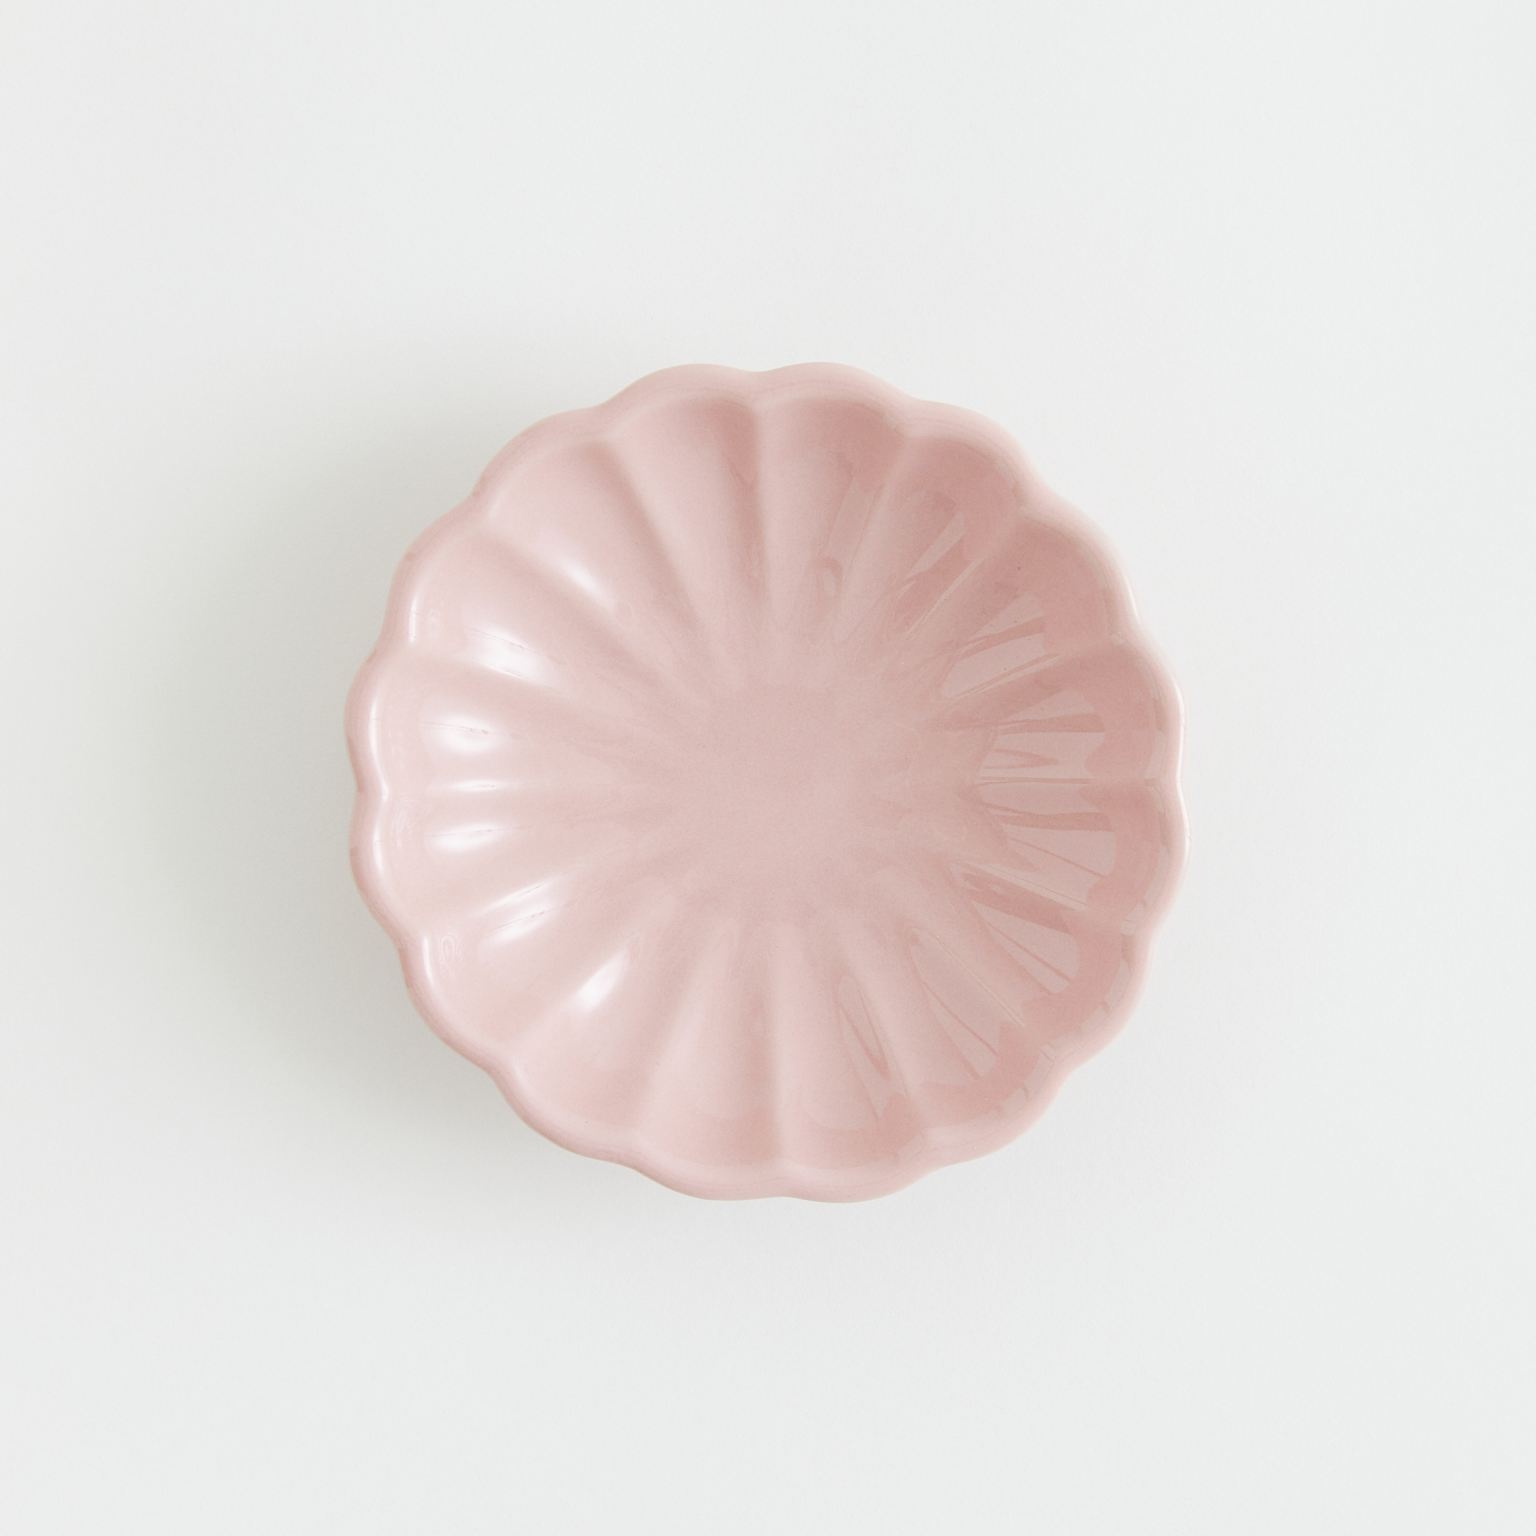 porcelanowy talerzyk mały różowy do stylizacji zdjęć